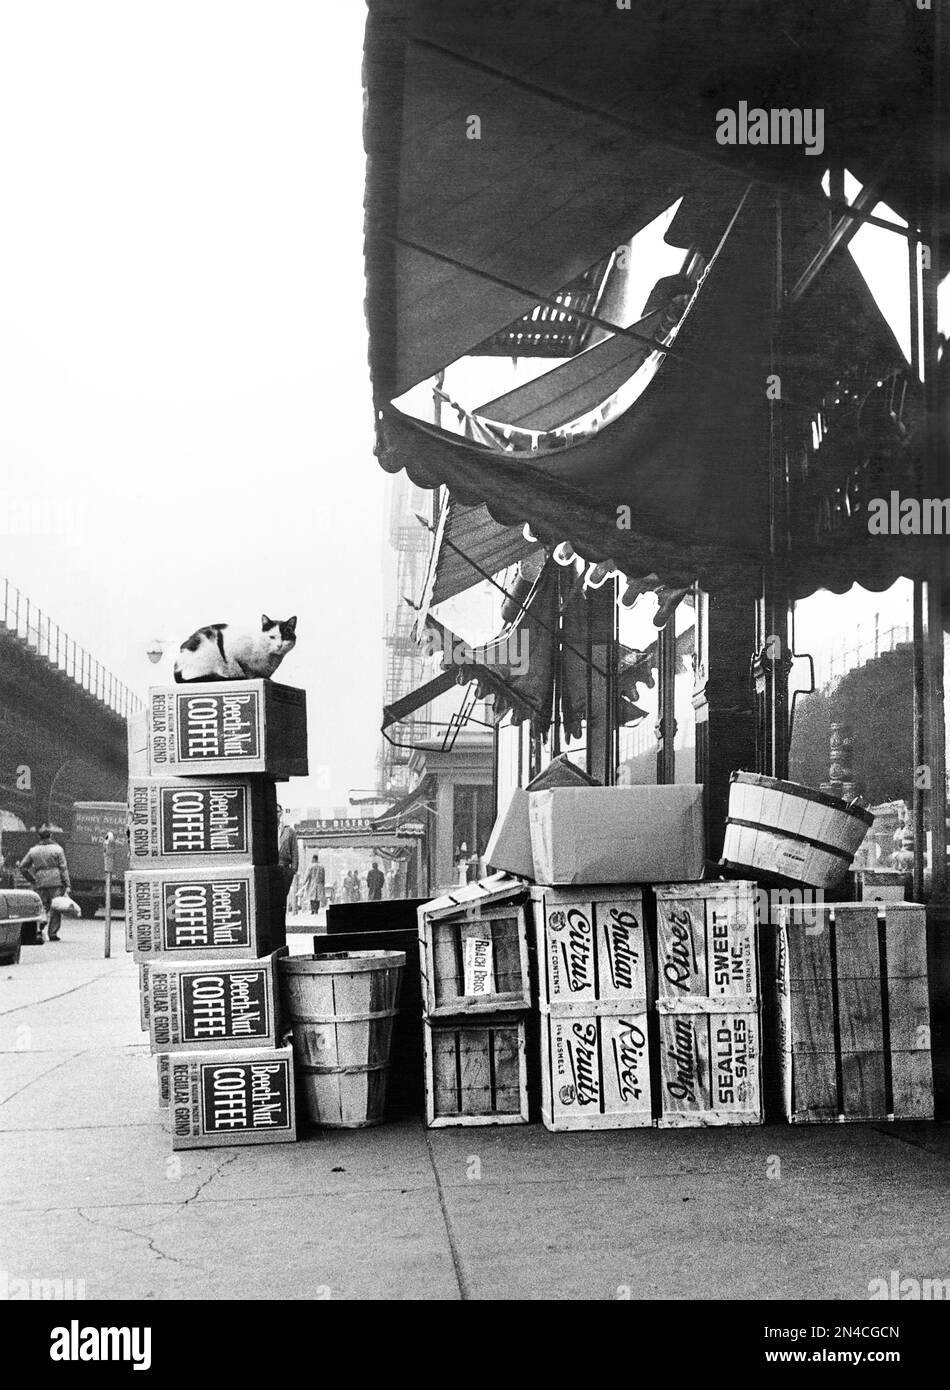 Gatto seduto in cima scatole di caffè di faggio-noce tra le altre Crates sul marciapiede, New York City, New York, USA, Angelo Rizzuto, Anthony Angel Collection, aprile 1955 Foto Stock